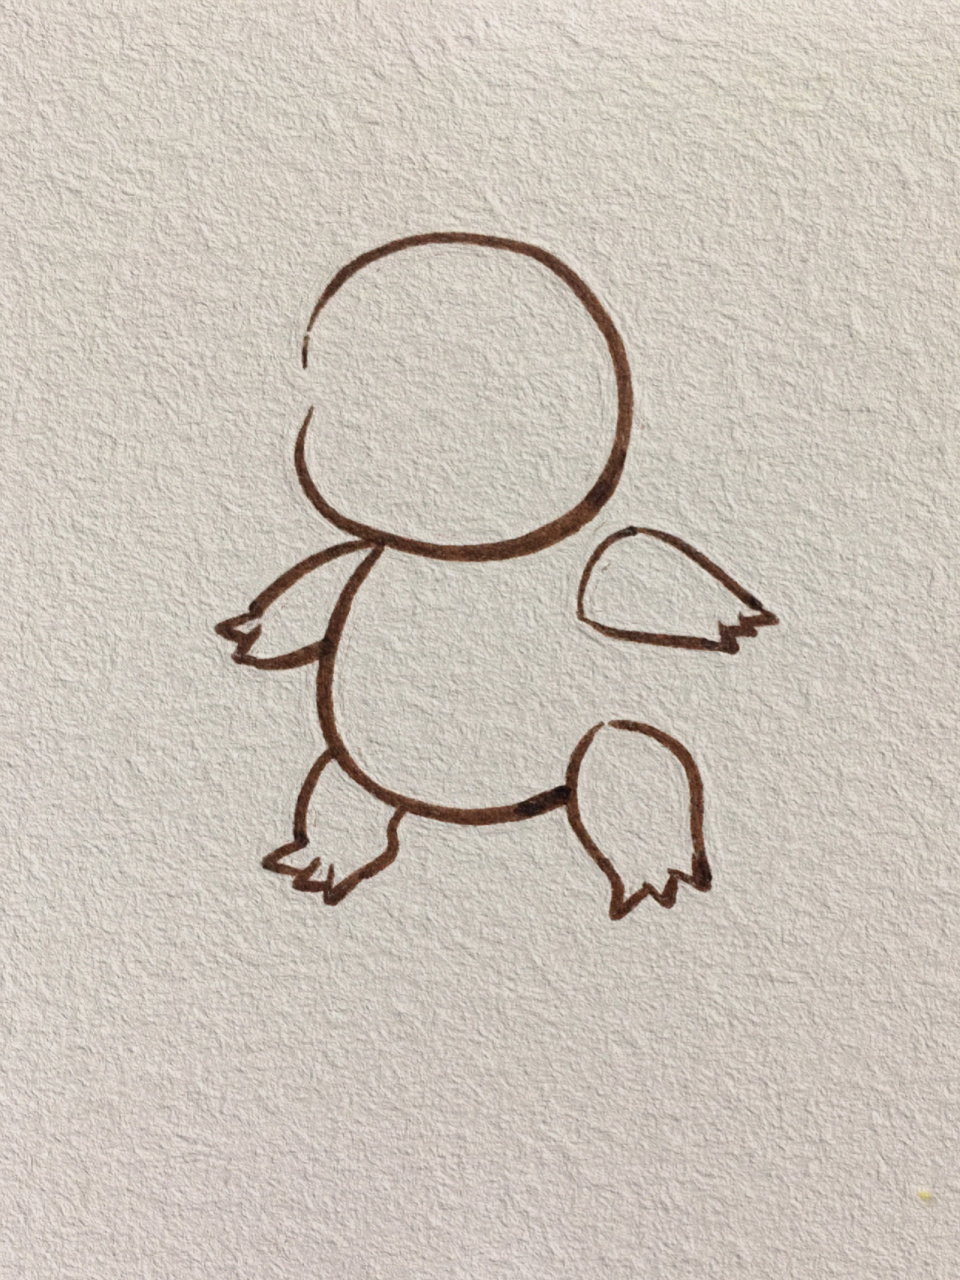 杰尼龟简笔画进化图片